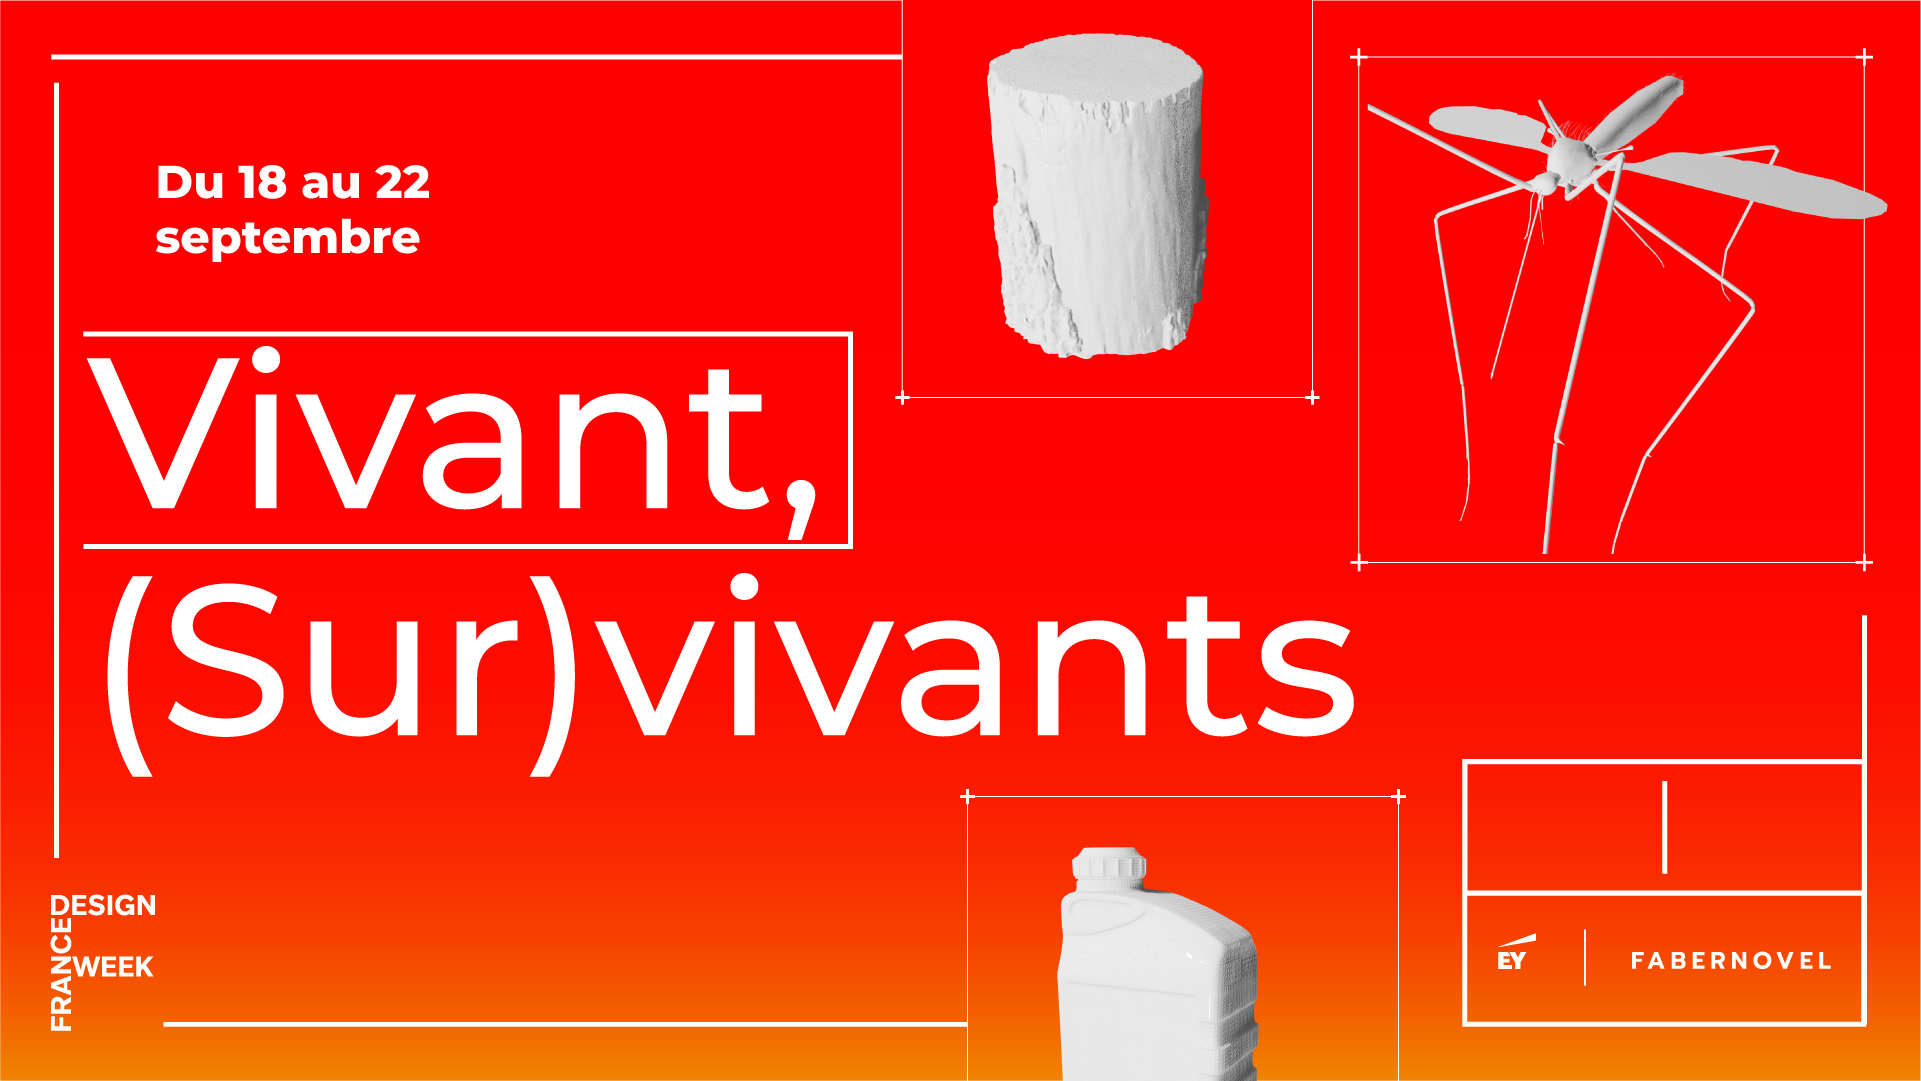 Vivant, (Sur)vivants, exposition présentée par EY Fabernovel dans le cadre de la Paris Design Week, du 18 au 22 septembre